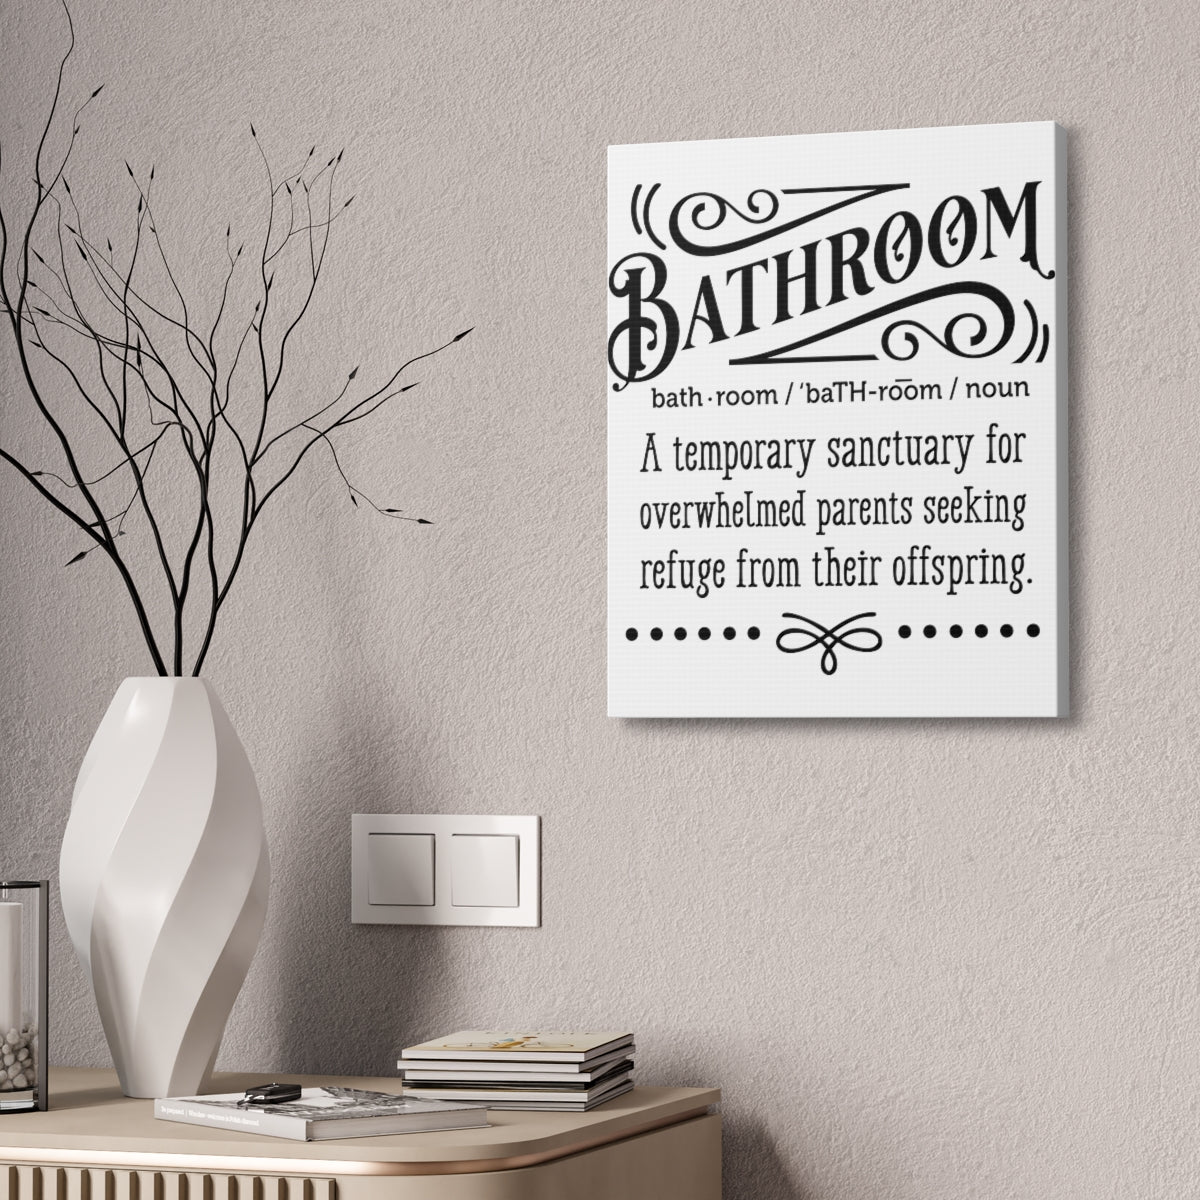 Farmhouse Decor - Bathroom Wall Art - Canvas Sign - Temporary Sanctuary For Parents